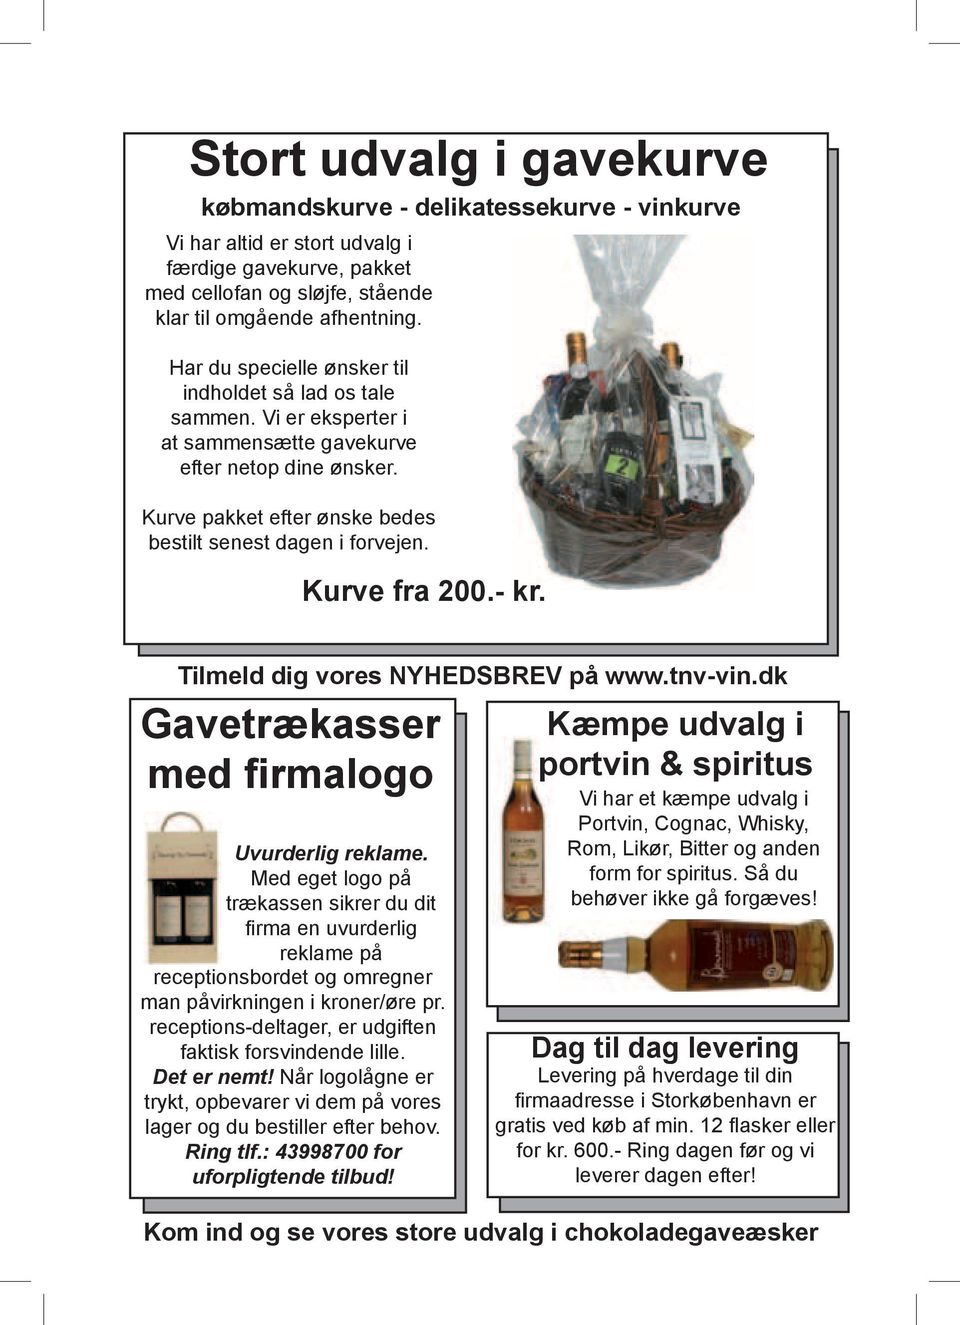 Kurve fra 200.- kr. Tilmeld Alle vine dig kan vores pakkes NYHEDSBREV i 1, 2, 3, 4 & på 6 stk. www.tnv-vin.dk emballager Gavetrækasser med firmalogo Uvurderlig reklame.